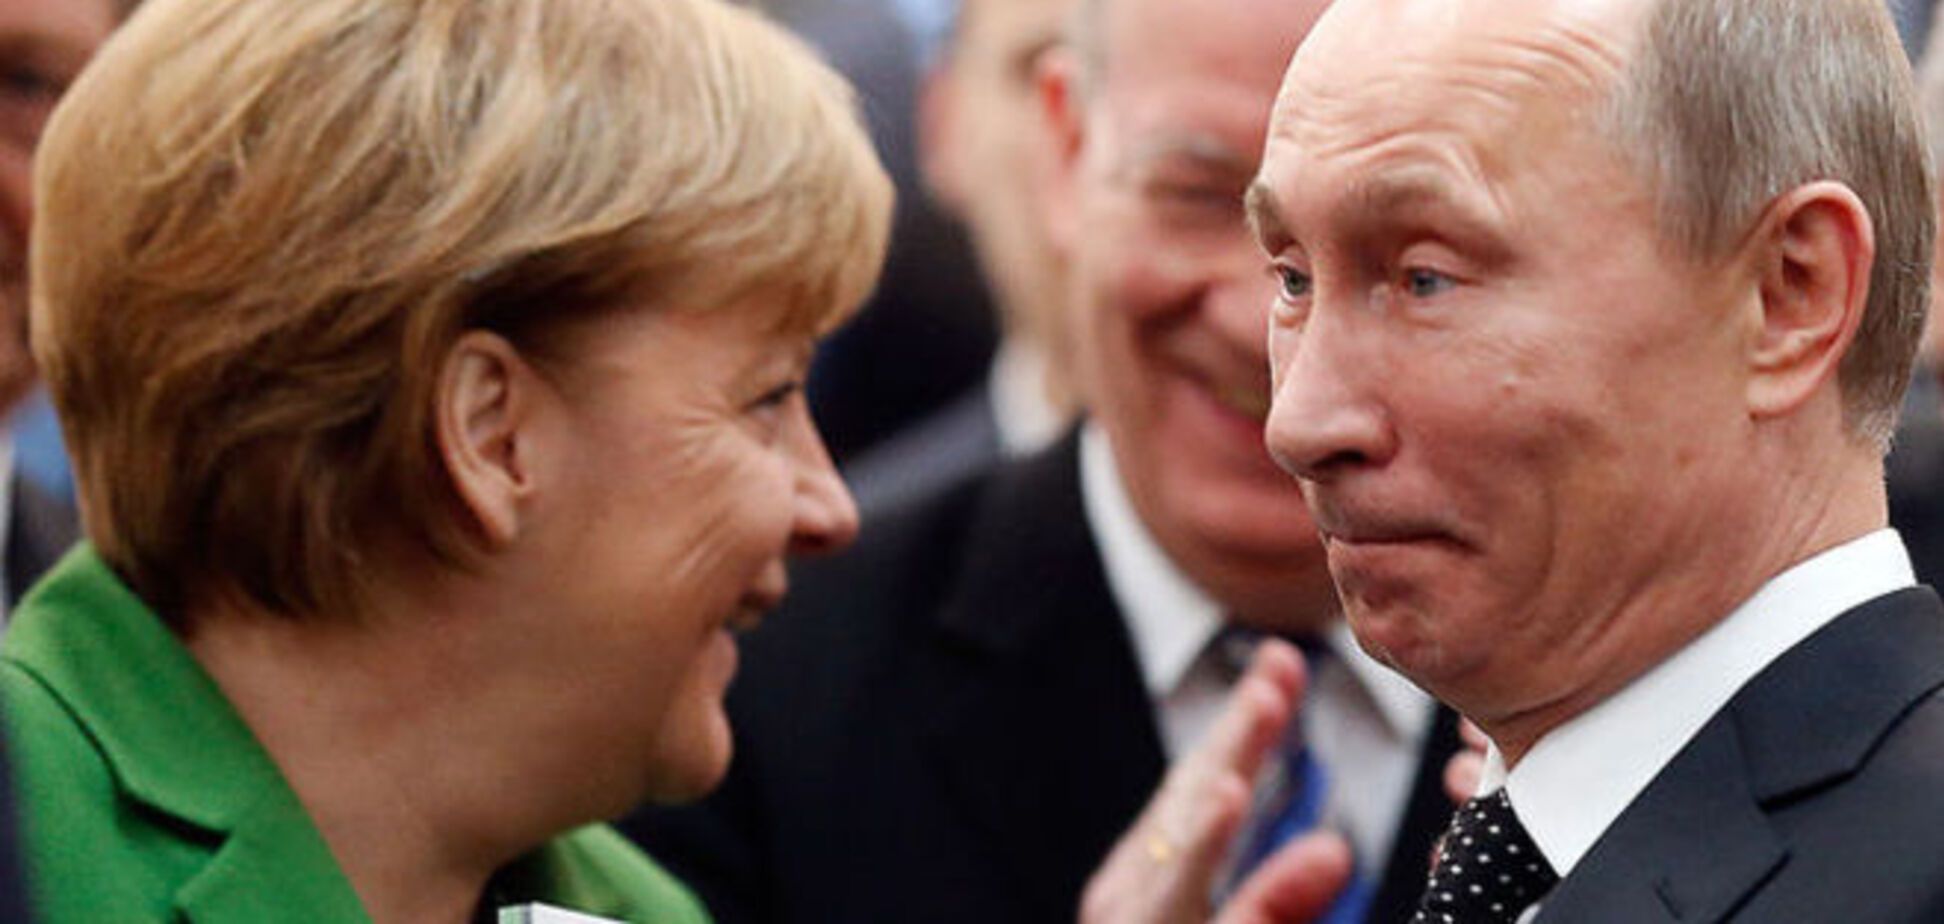 Случайно или специально Путин опоздал на встречу с Меркель?